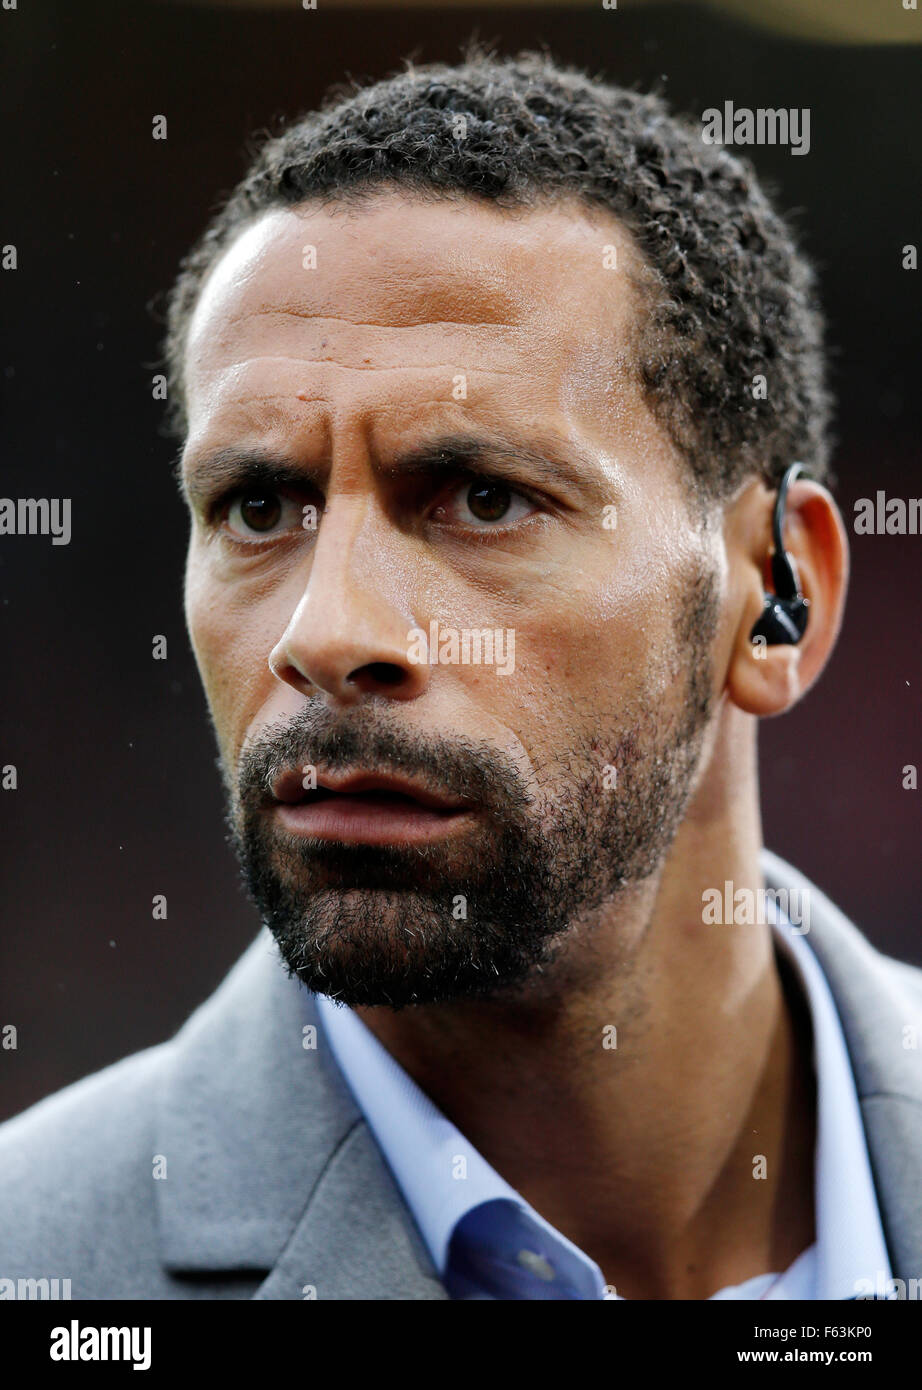 Rio Ferdinand, ein BT-Sport-TV-Moderatorin bei einem Fußballspiel in England Stockfoto